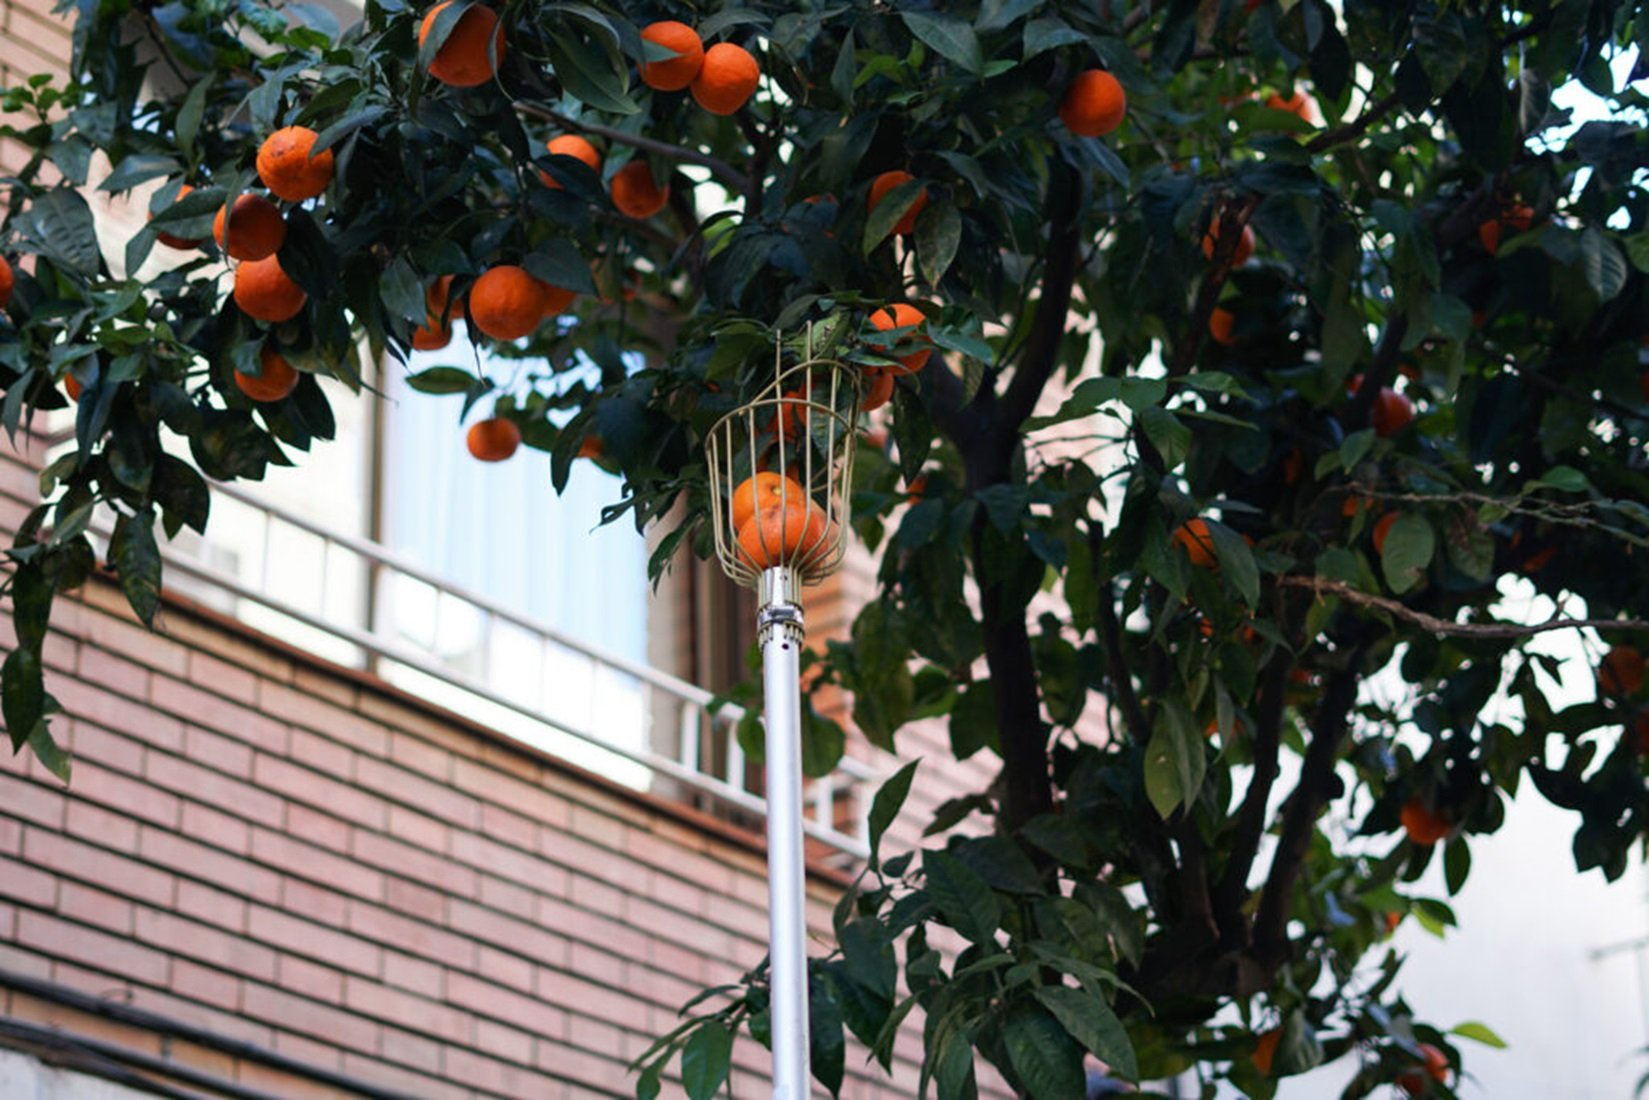 Sis districtes de Barcelona espigolaran taronges amargues per fer-ne melmelada